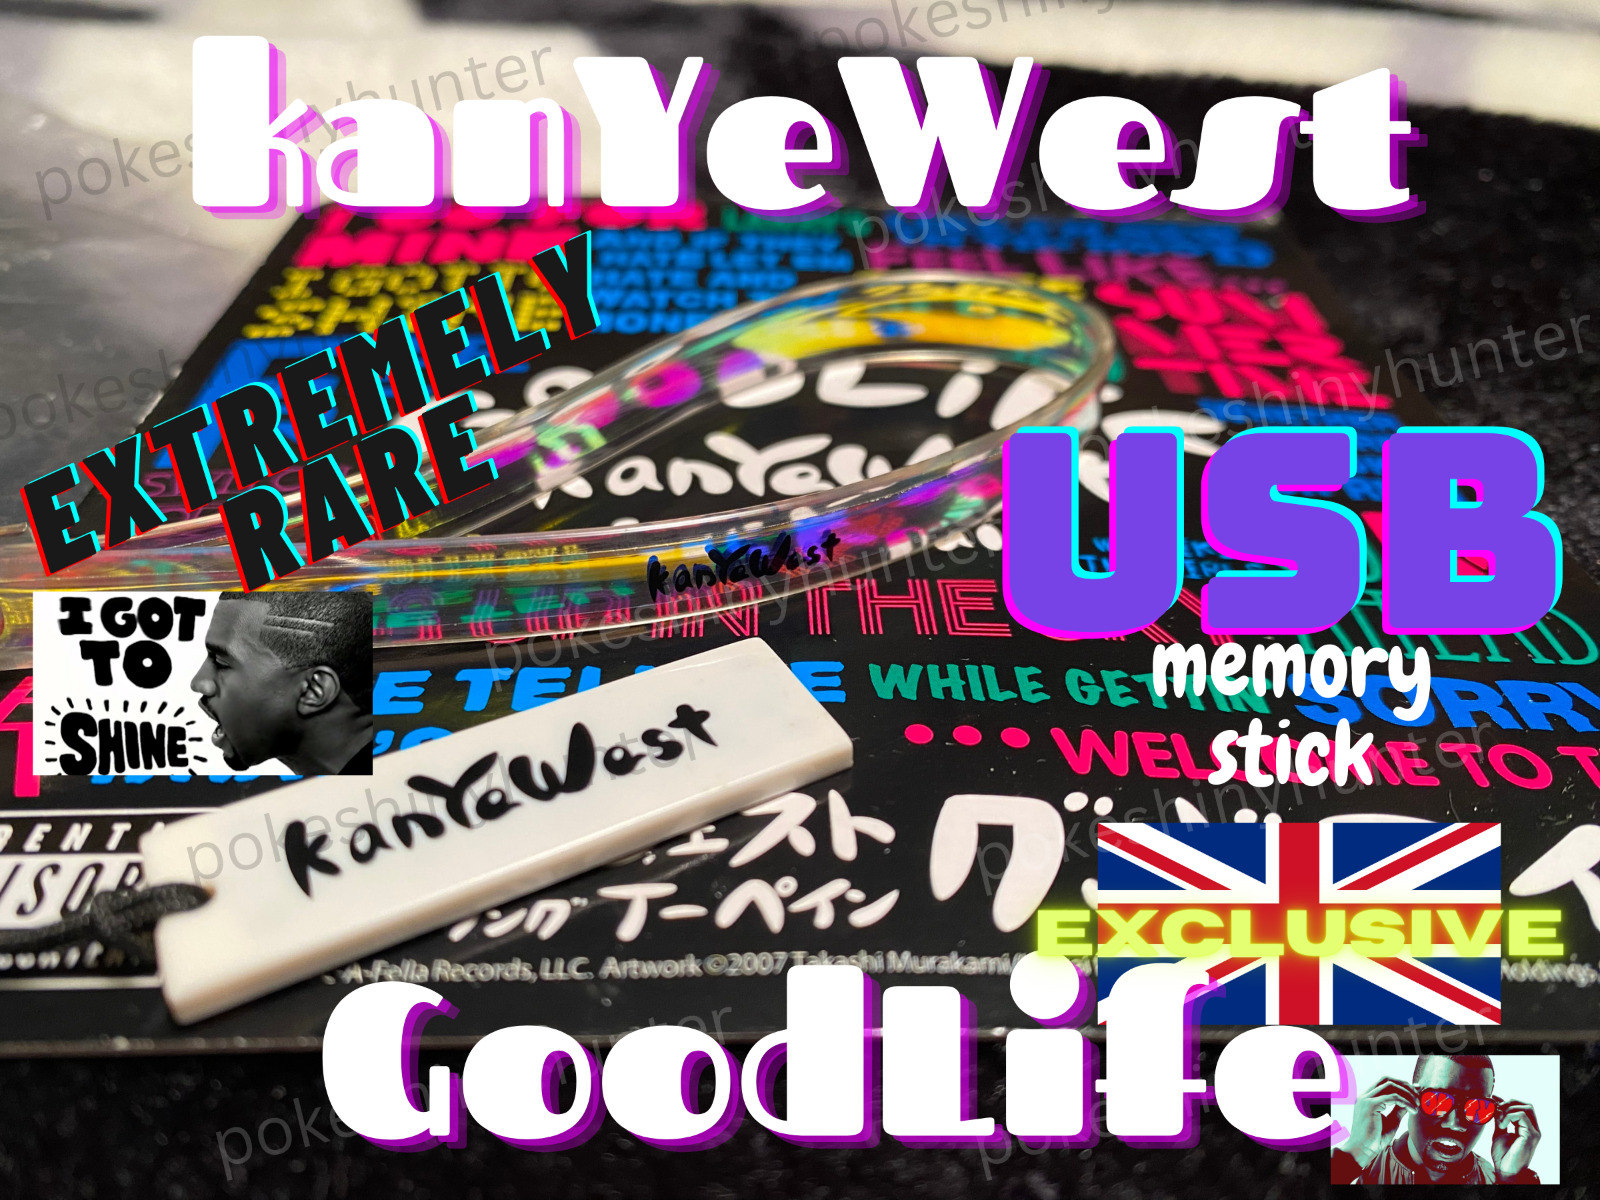 EXTREMELY RARE Kanye West Good Life (ft. T-Pain) - single USB Memory Stick UK